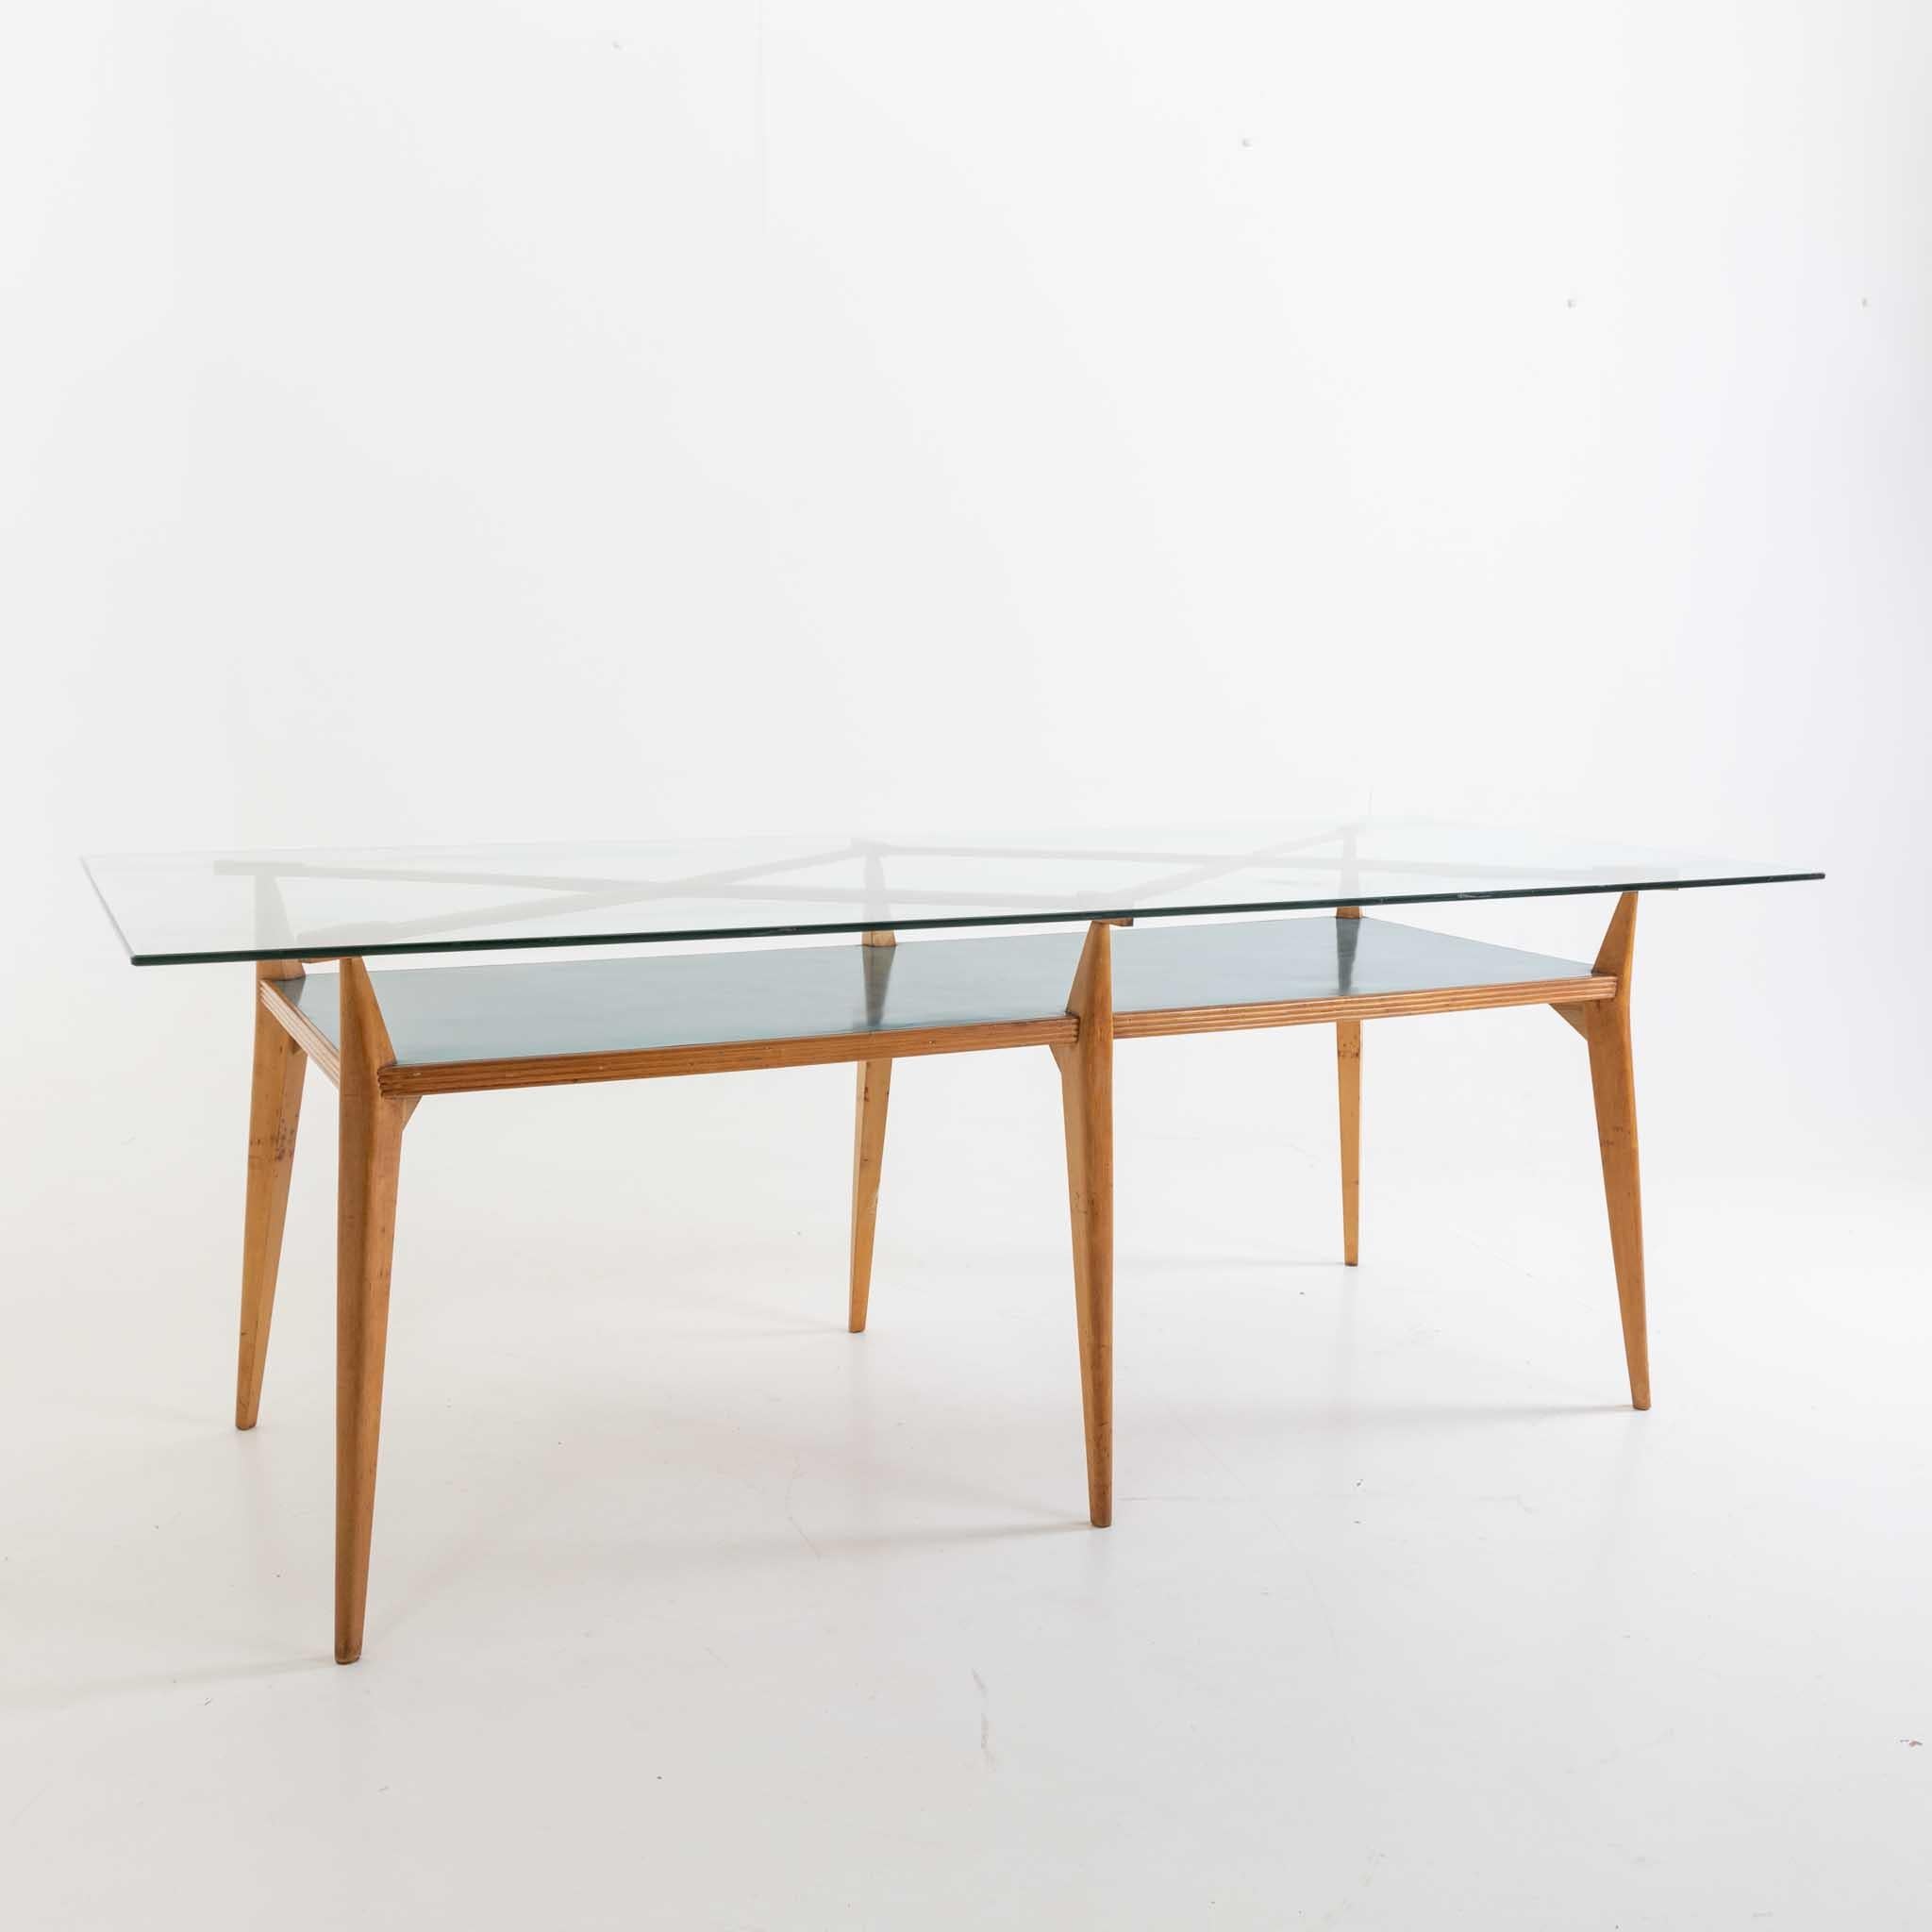 Auf sechs konischen Beinen stehender Tisch mit Glasplatte und rautenförmigen Verstrebungen über der blau laminierten Tischplatte. Der Tisch wurde in der Mitte des 20. Jahrhunderts für ein Studio des Architekten Vittorio Armellini entworfen. Die